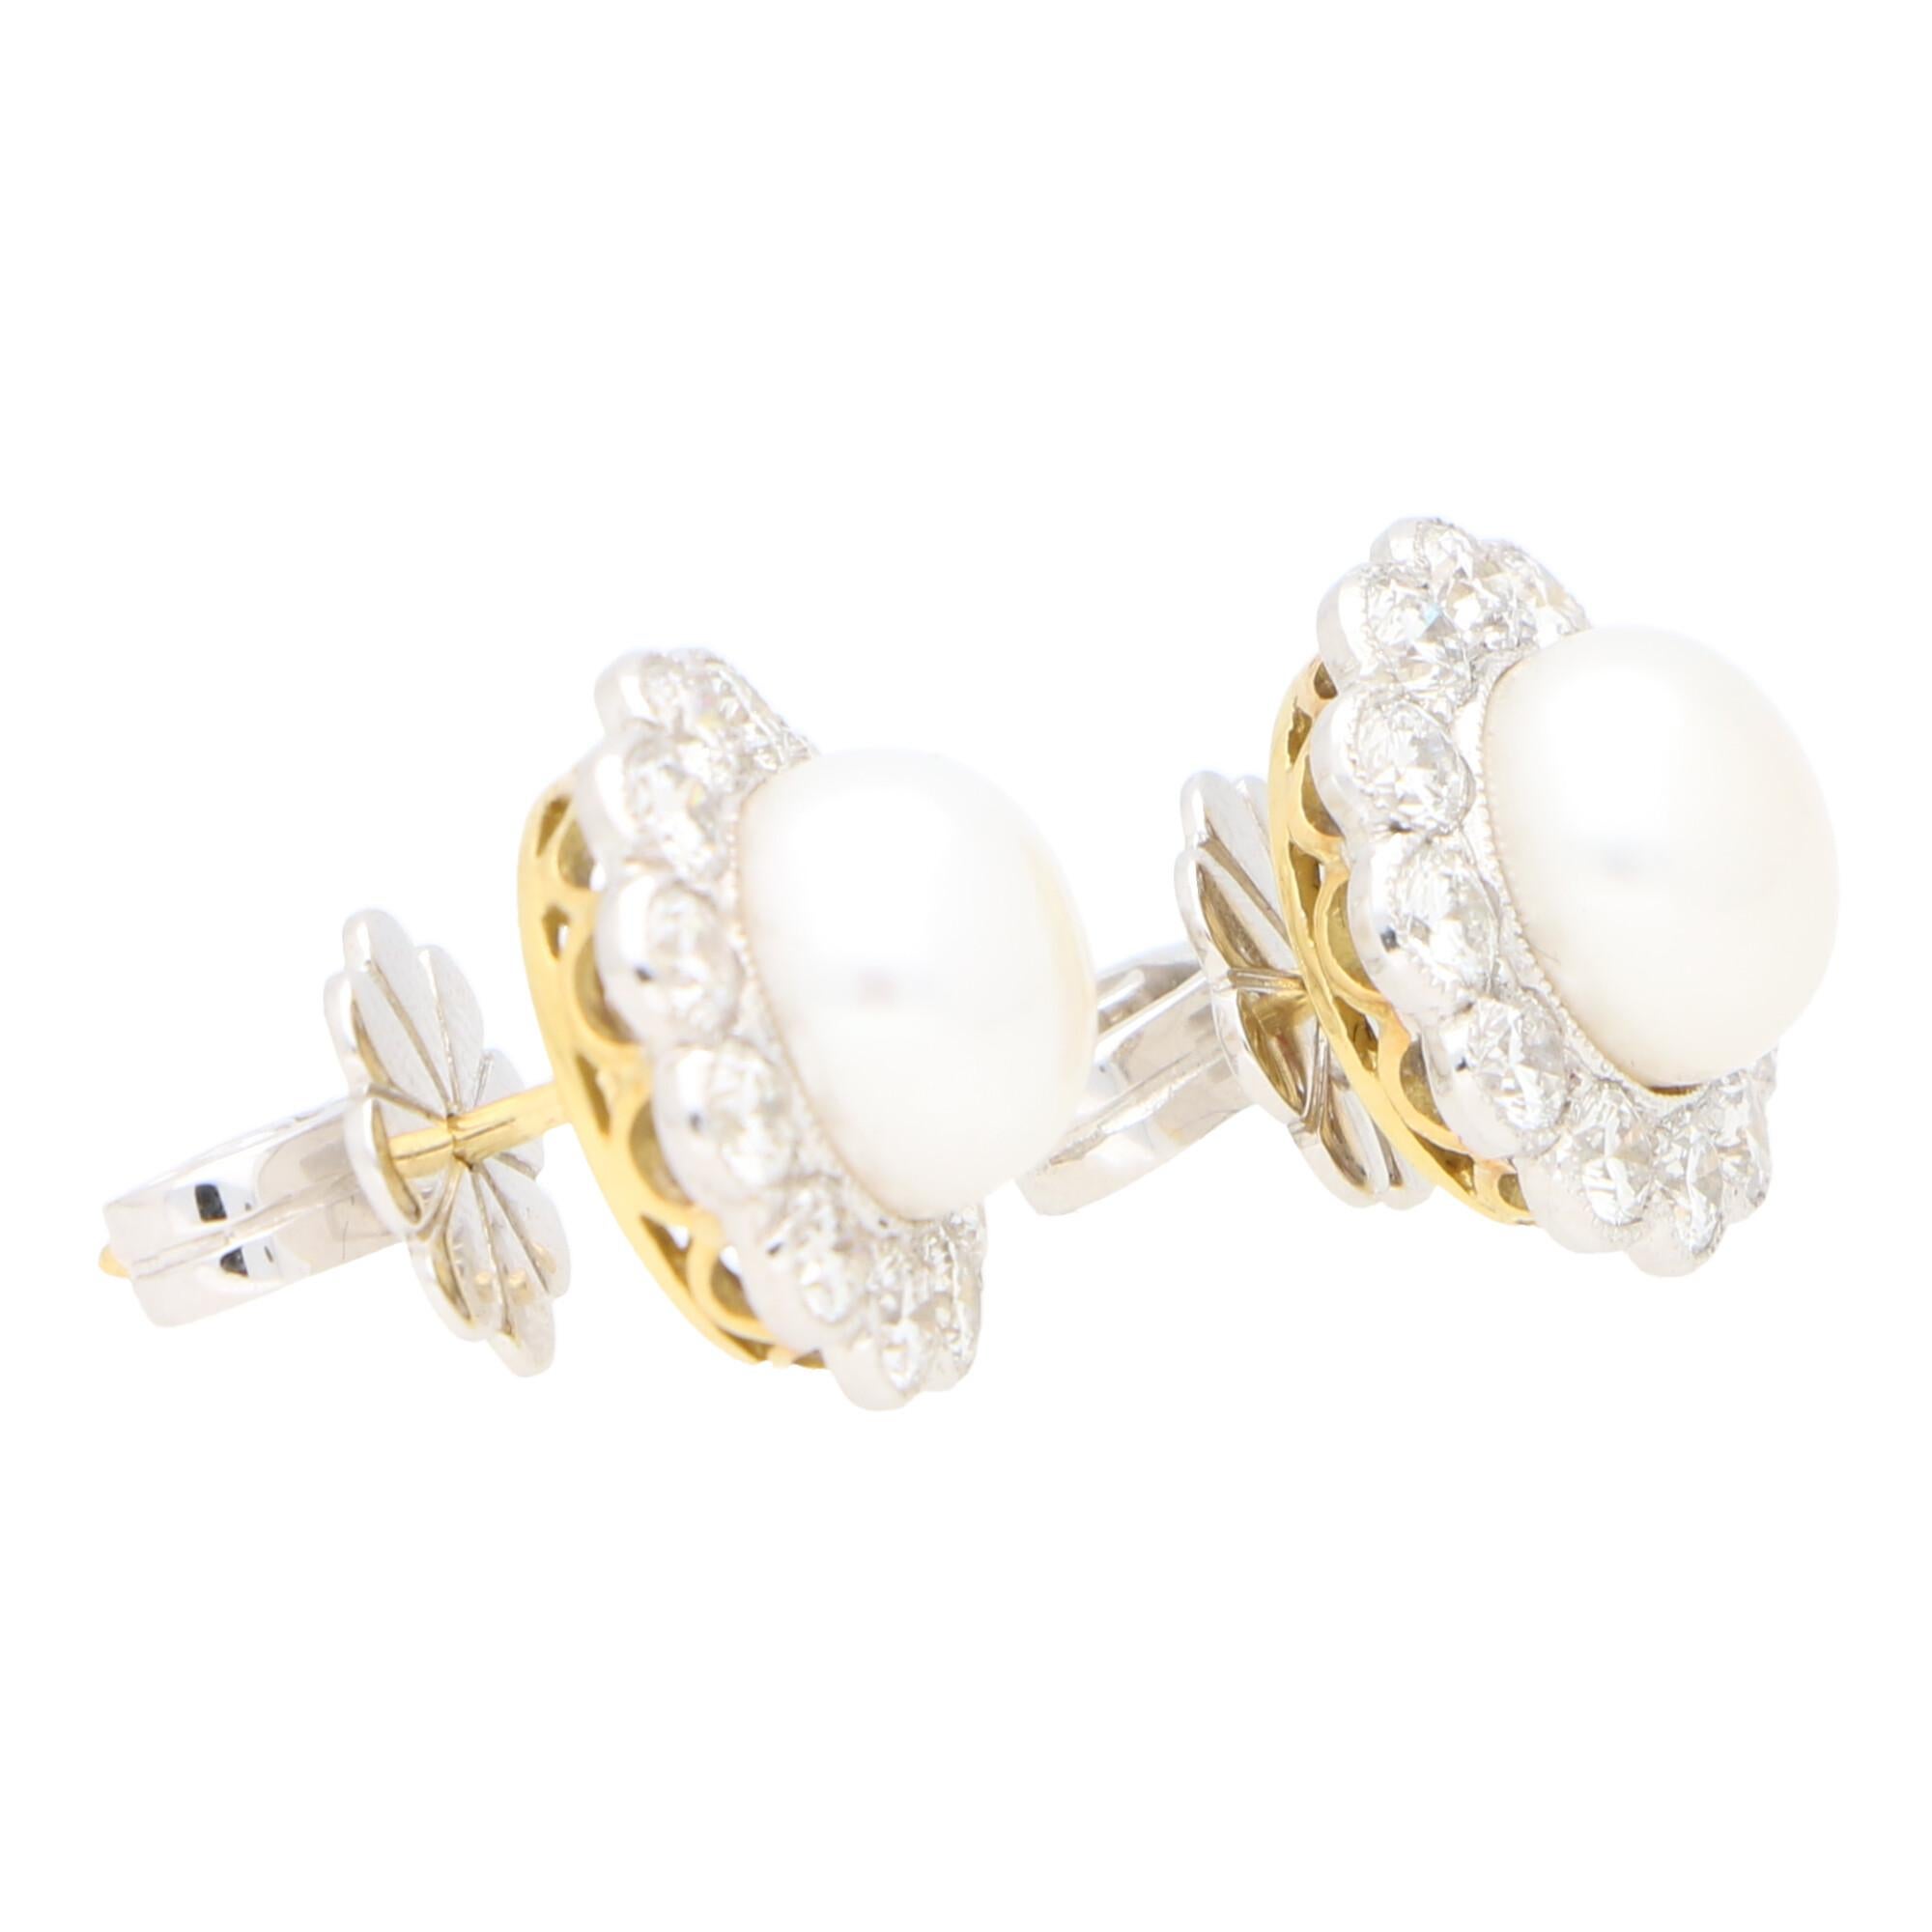 Modern Diamond and White Pearl Cluster Earrings Set in 18 Karat White Gold